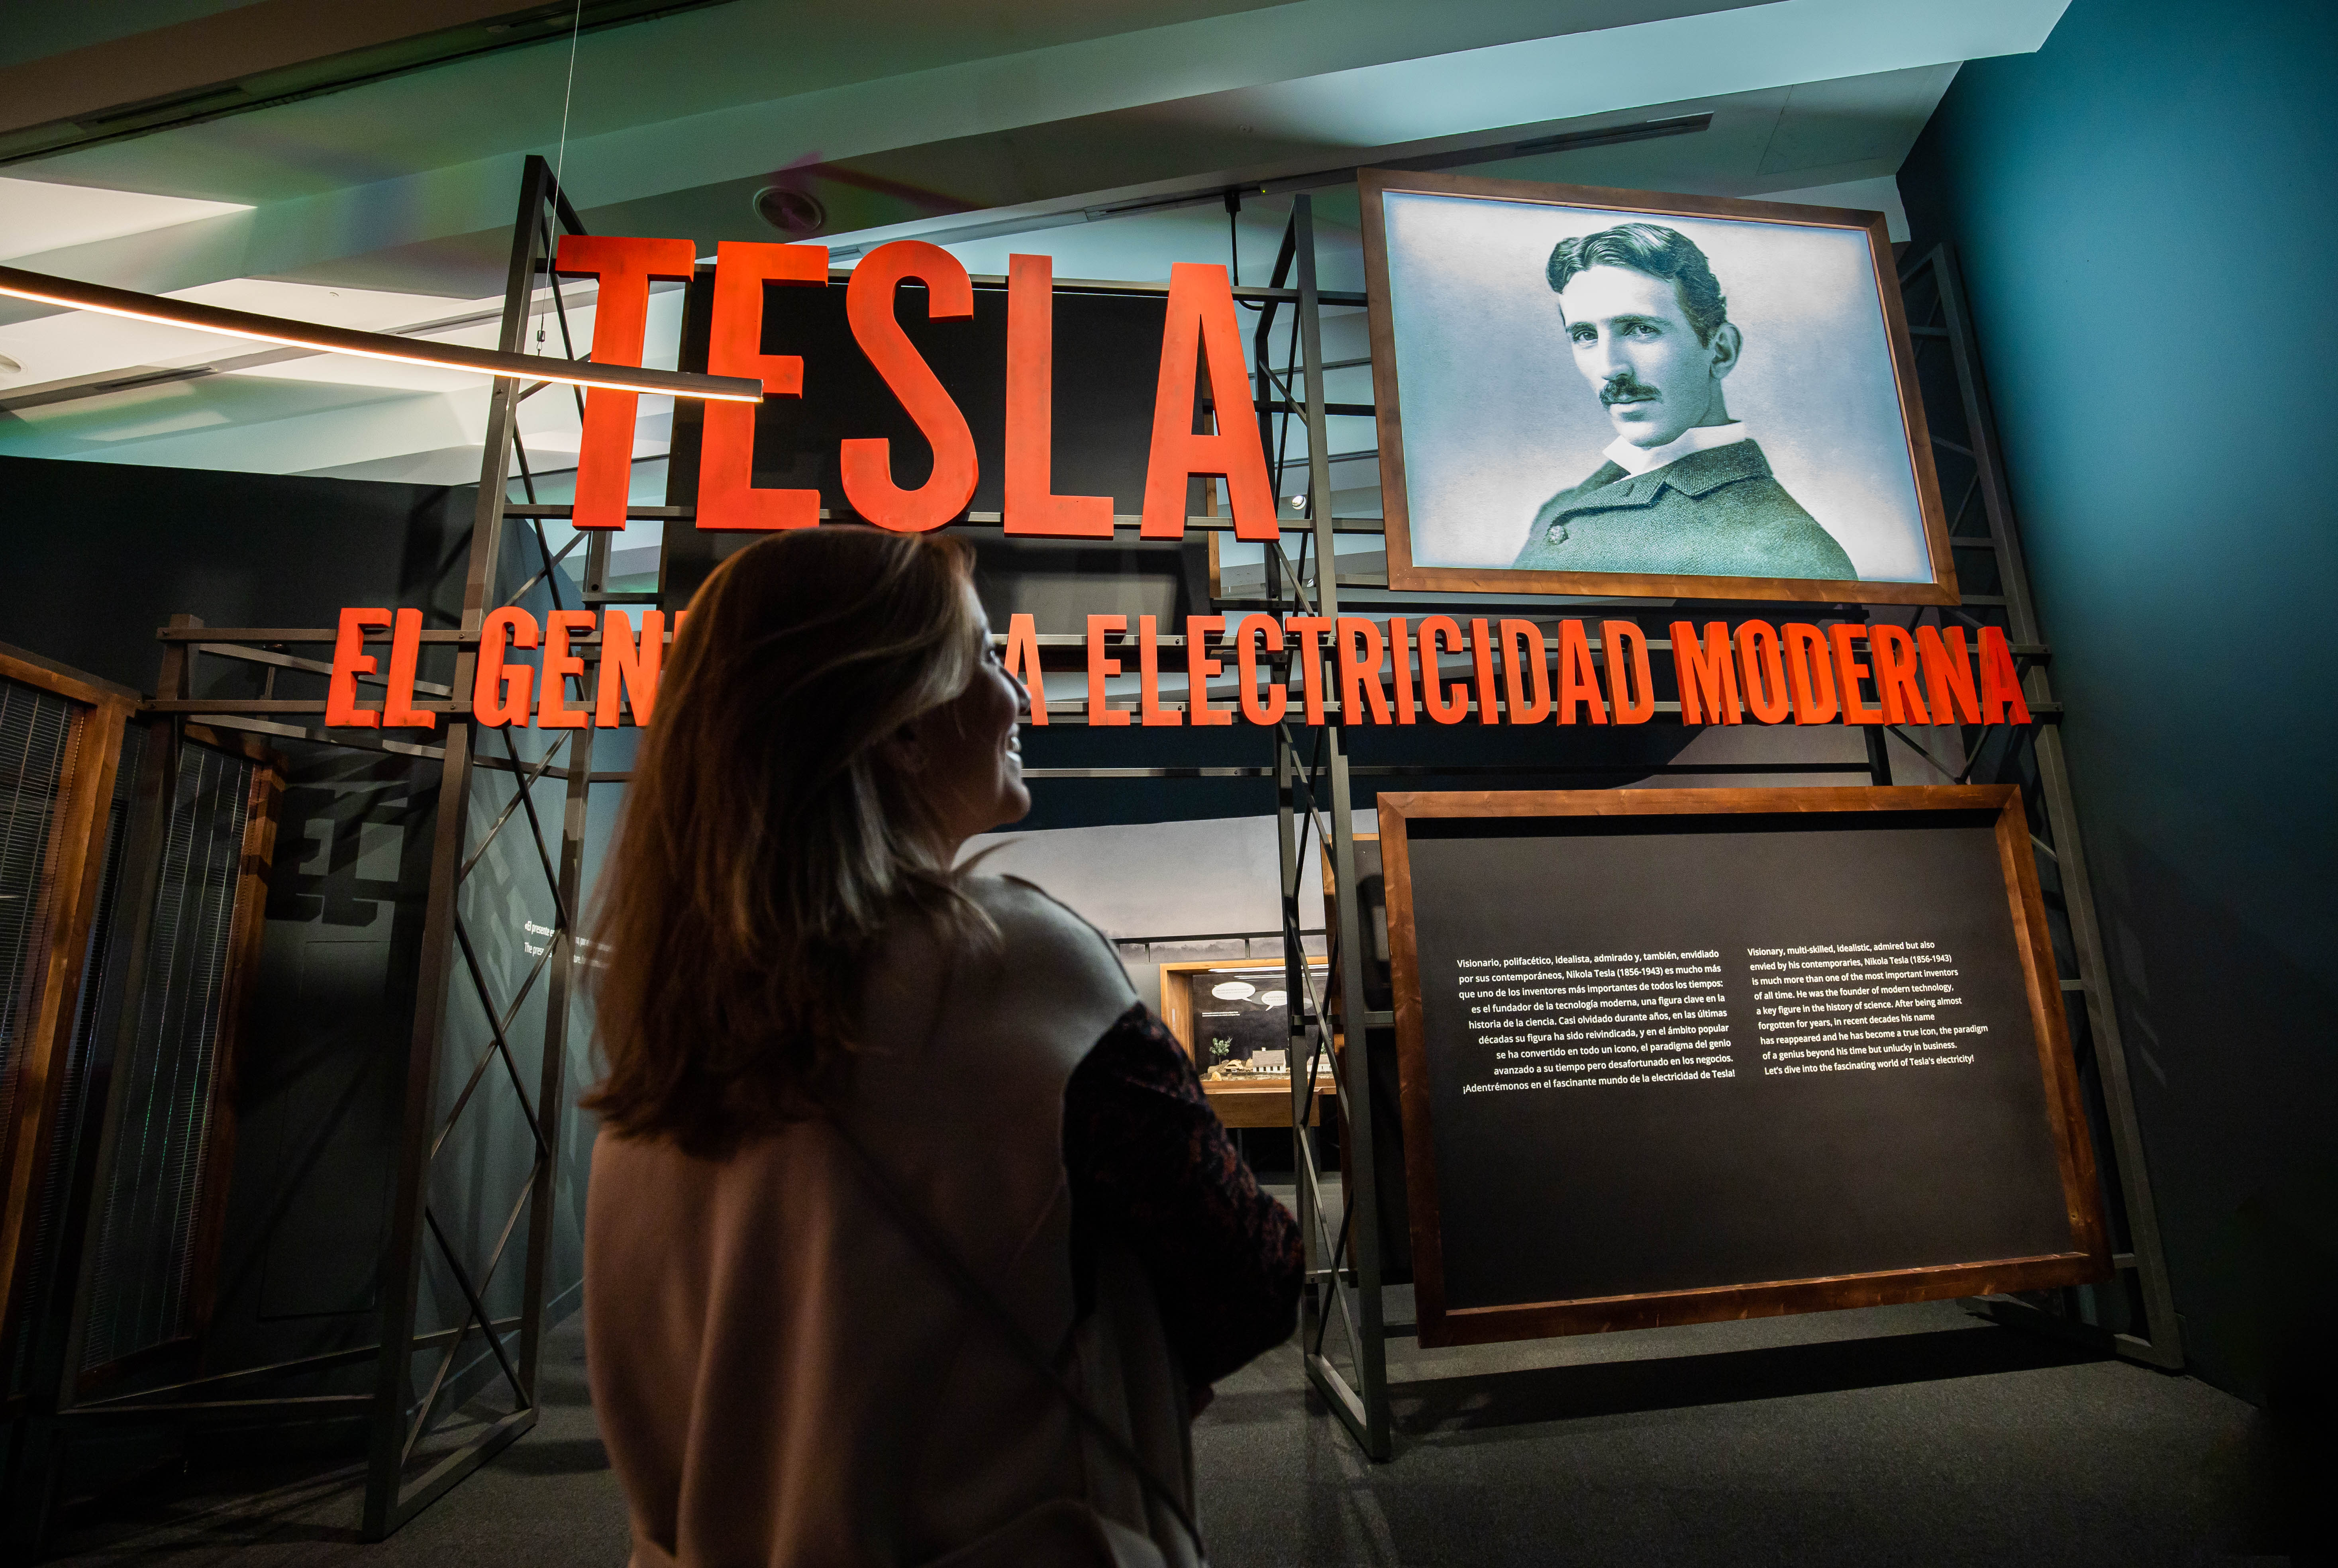 "Tesla, el genio de la electricidad moderna". CaixaForum Madrid